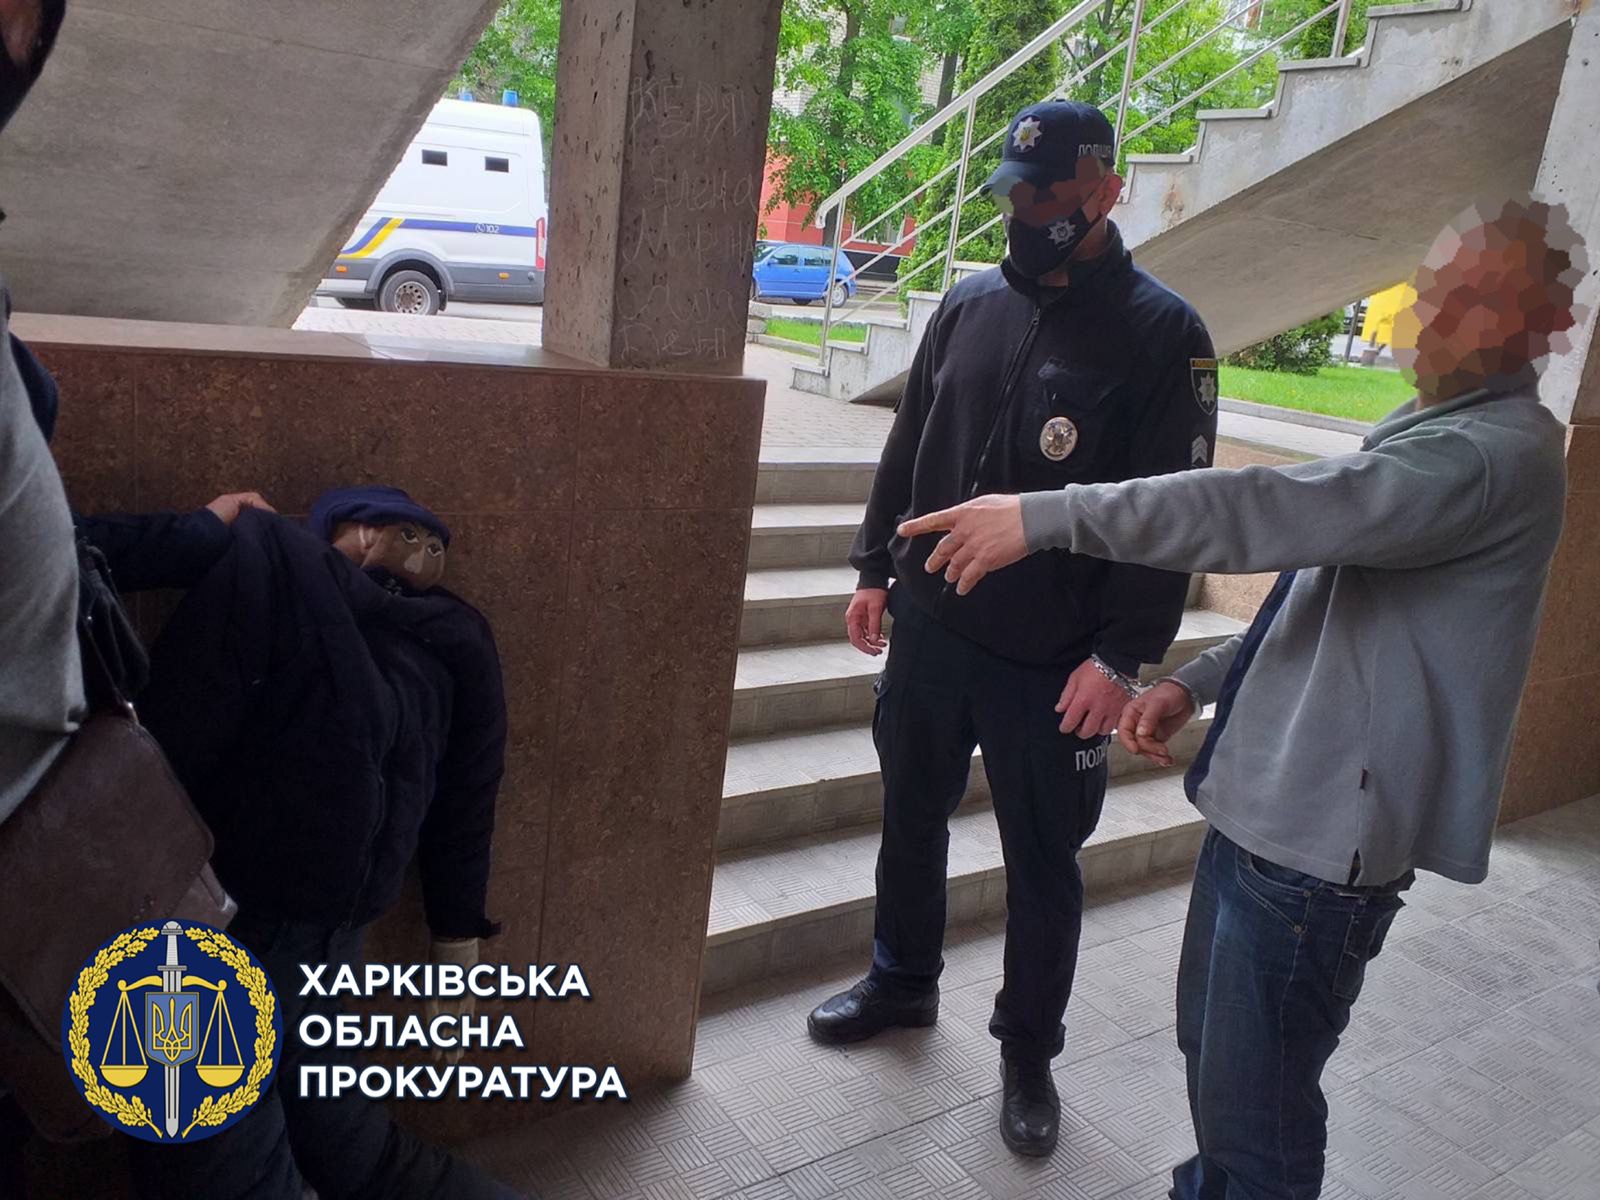 Криминал Харьков: Двое мужчин изнасиловали девушку в центральном парке  Изюма